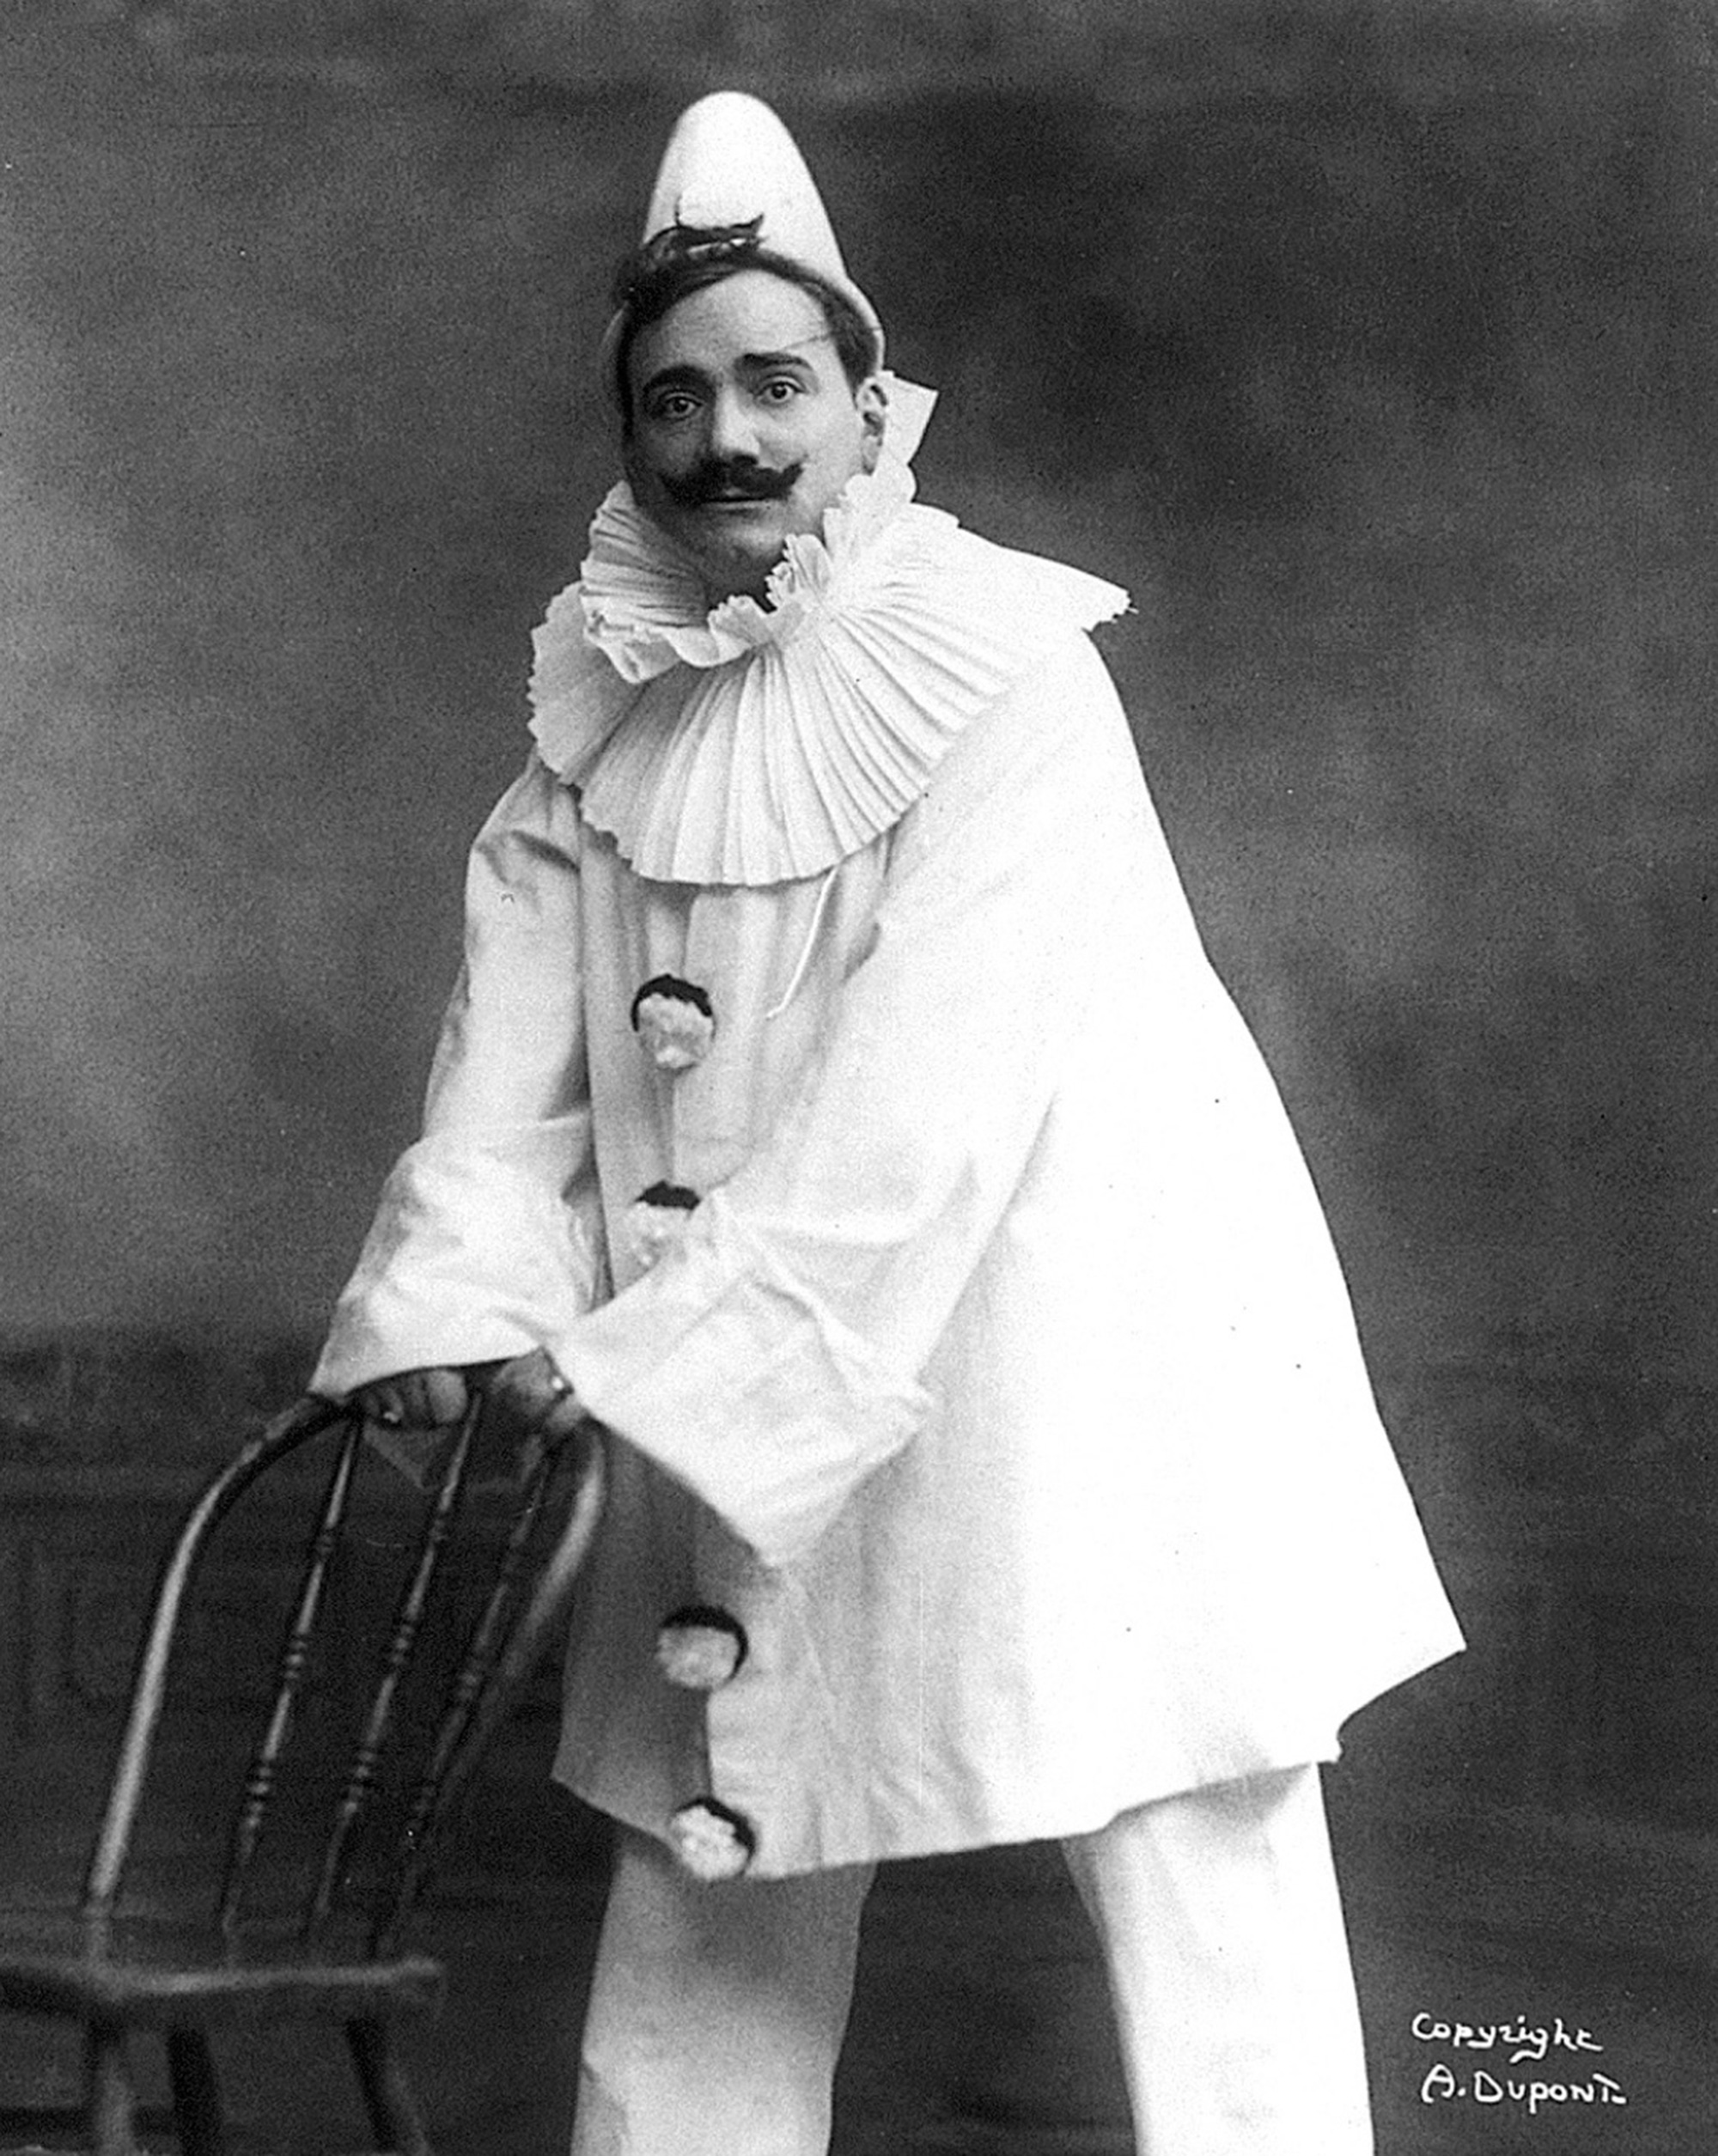 A photograph of Enrico Caruso as Canio in Leoncavallo’s opera “Pagliacci.”